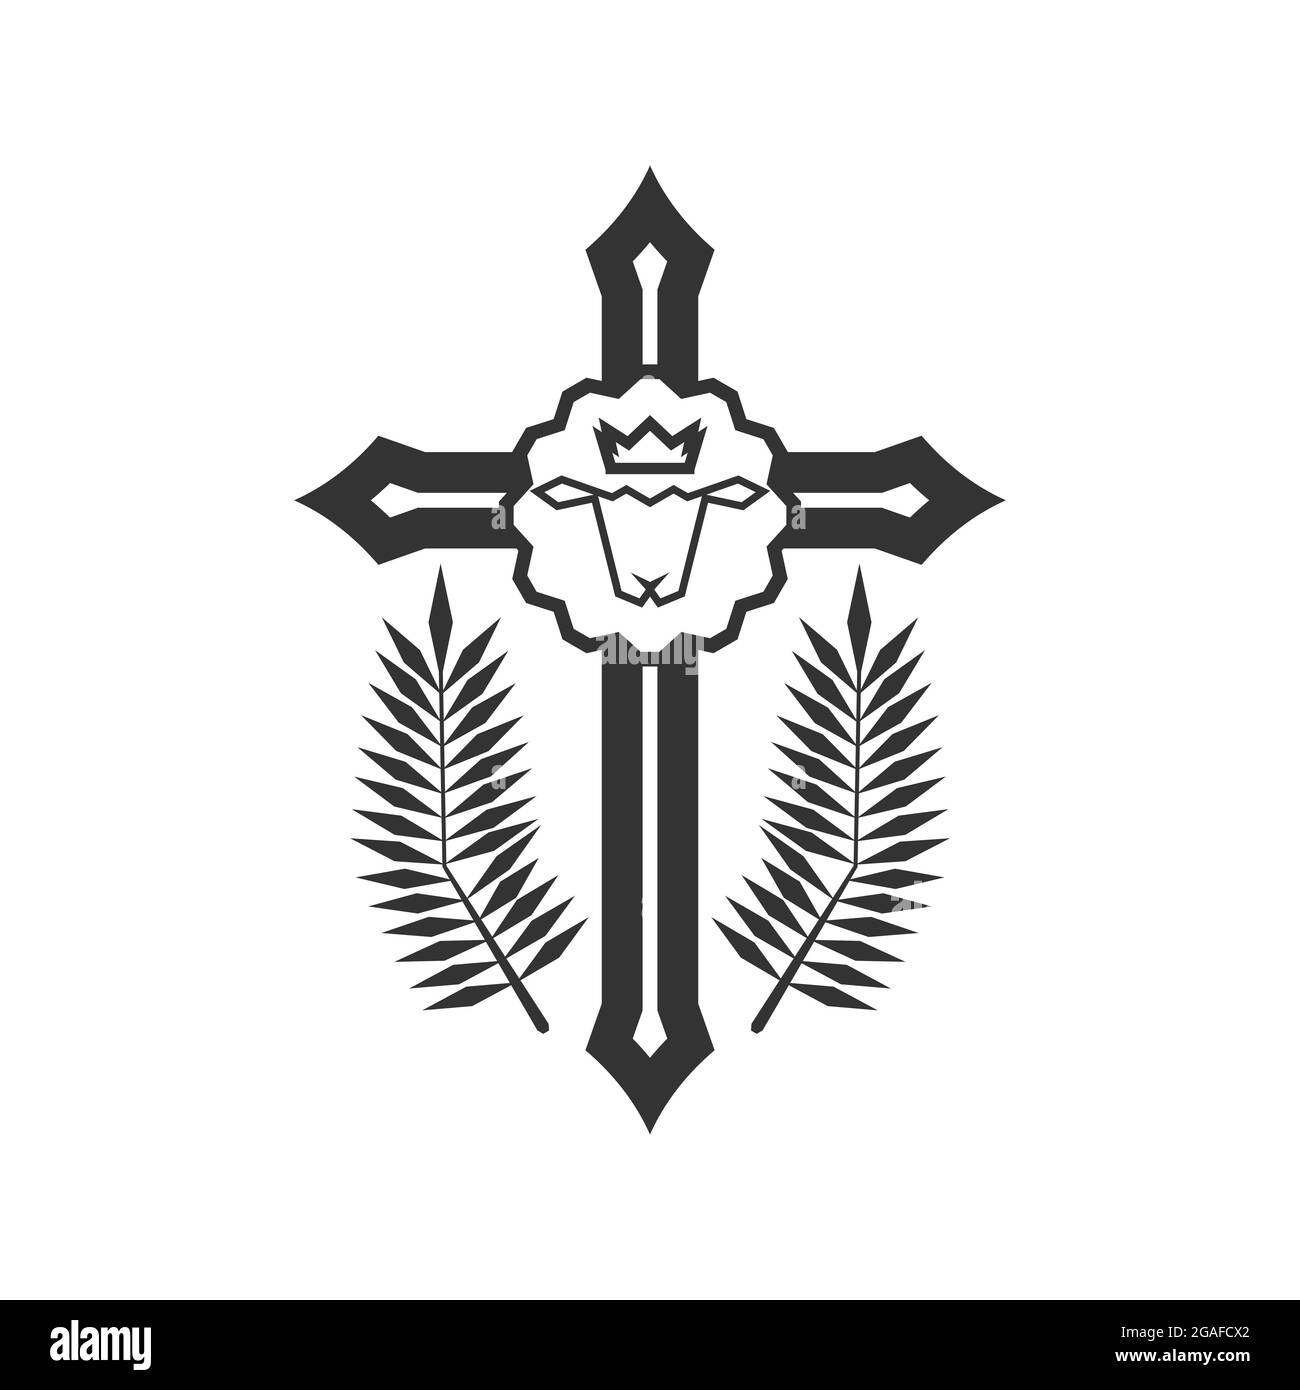 Illustrazione cristiana. Logo della Chiesa. Agnello di Dio che versò sangue per i peccati delle persone sulla croce. Illustrazione Vettoriale